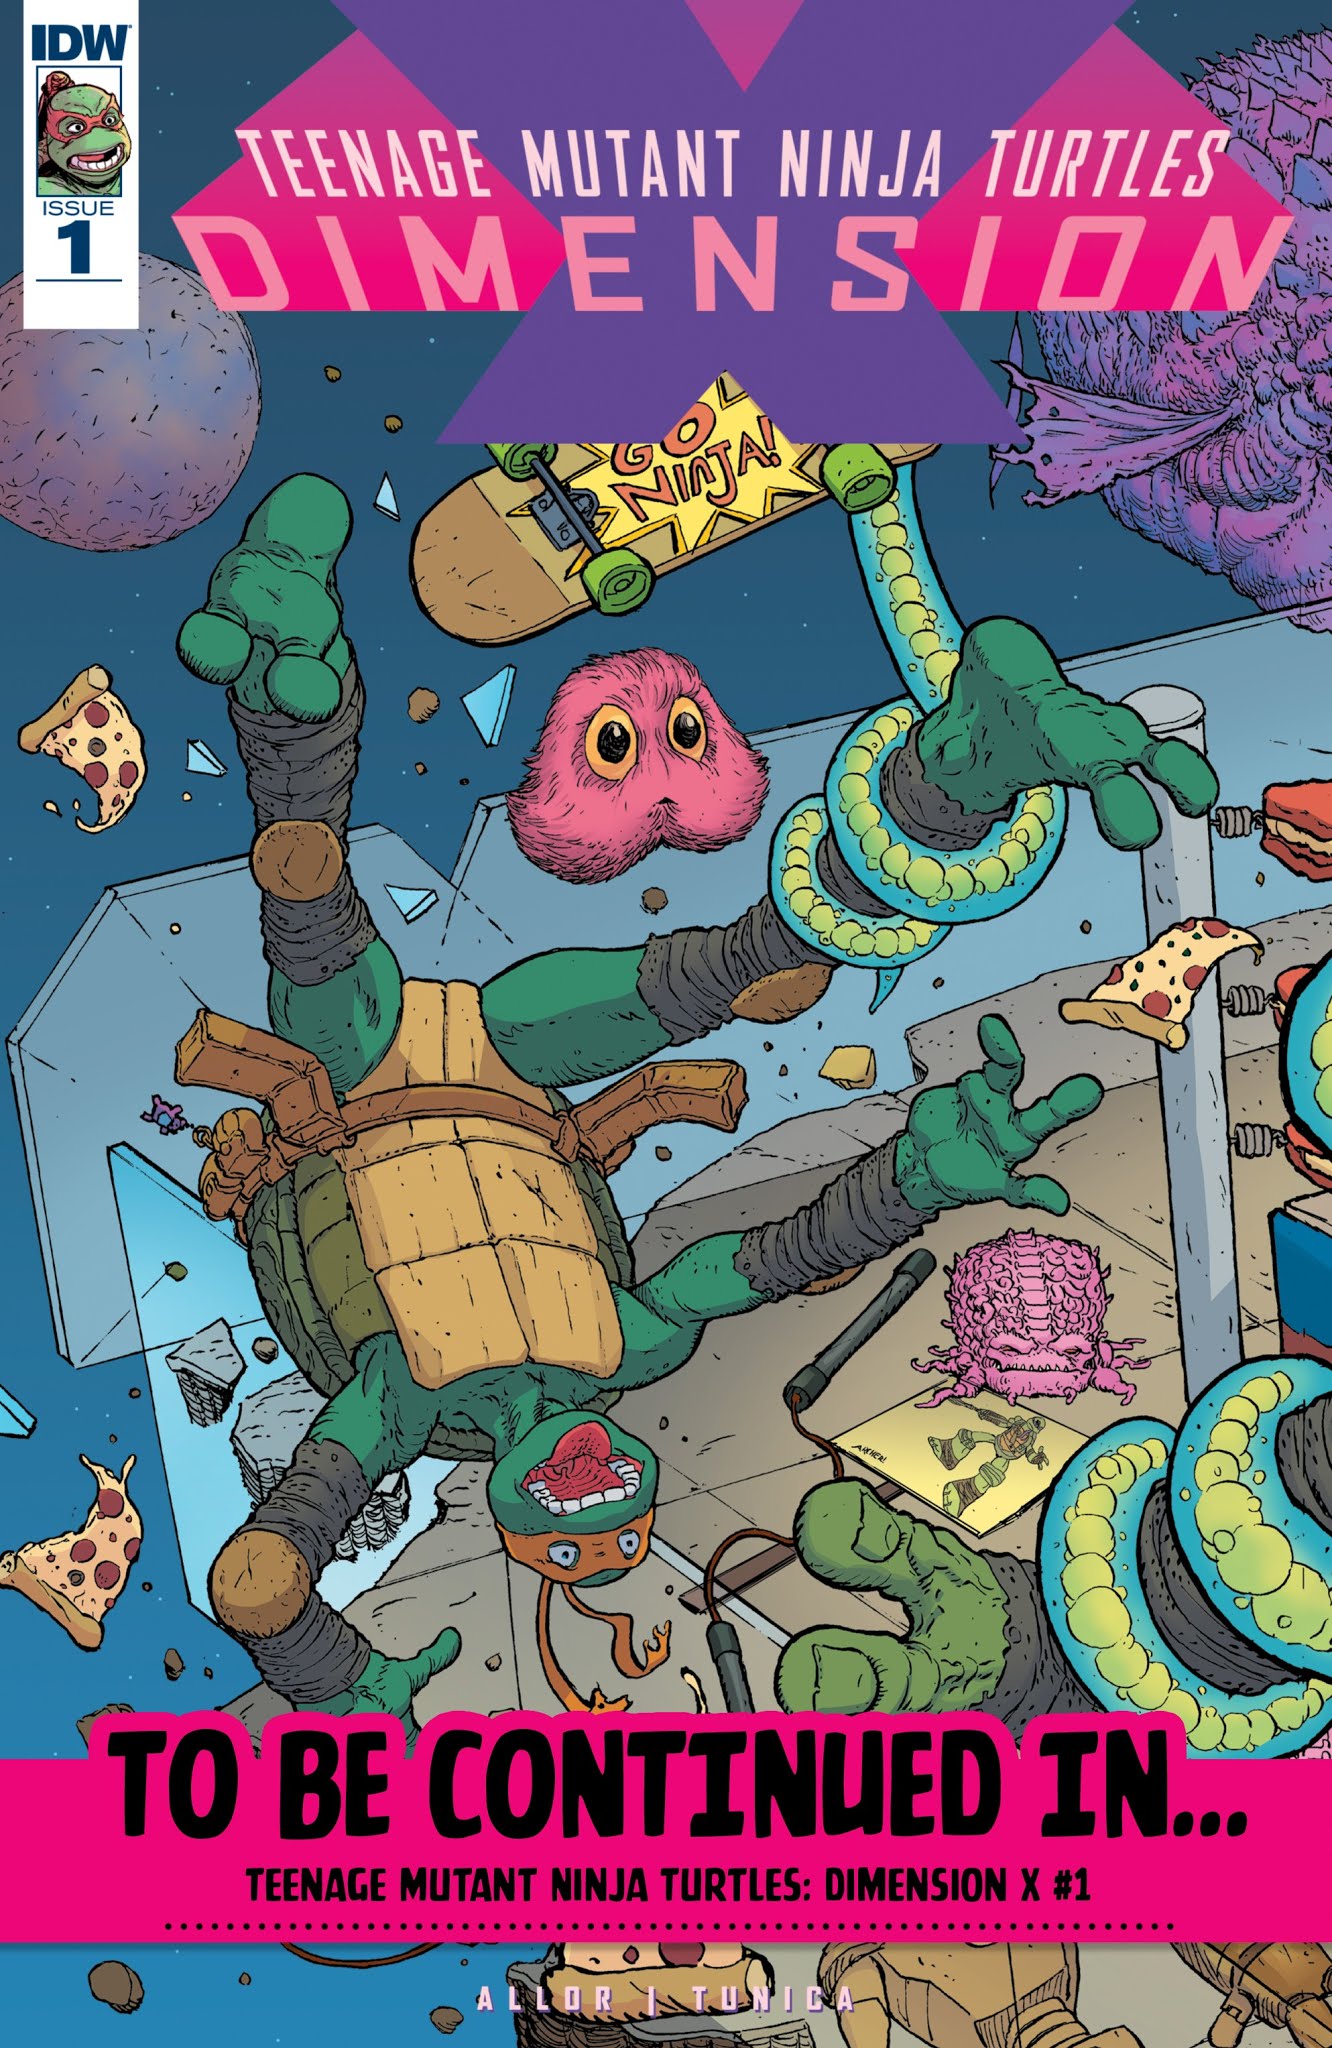 Read online Teenage Mutant Ninja Turtles: Urban Legends comic -  Issue #7 - 29